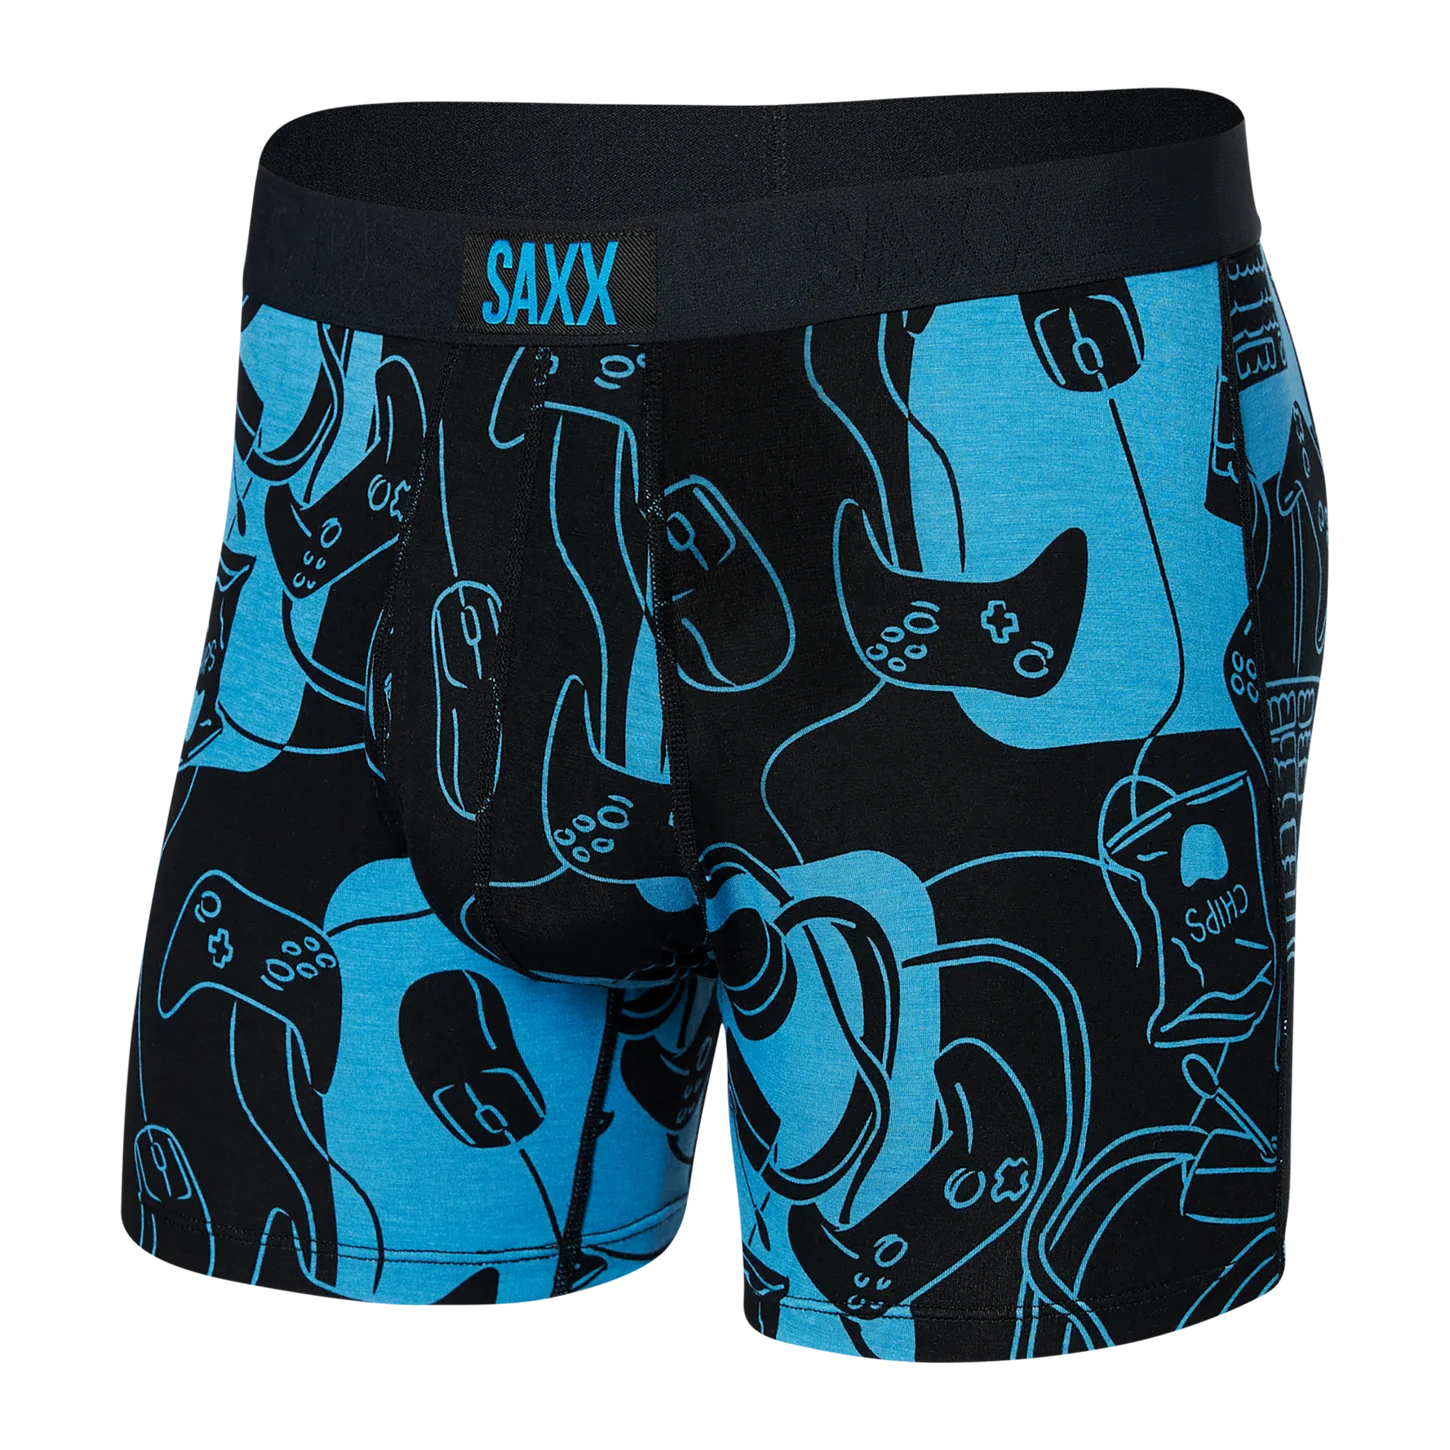 Saxx, Underwear & Socks, Saxx Briefs Brand New Xxl